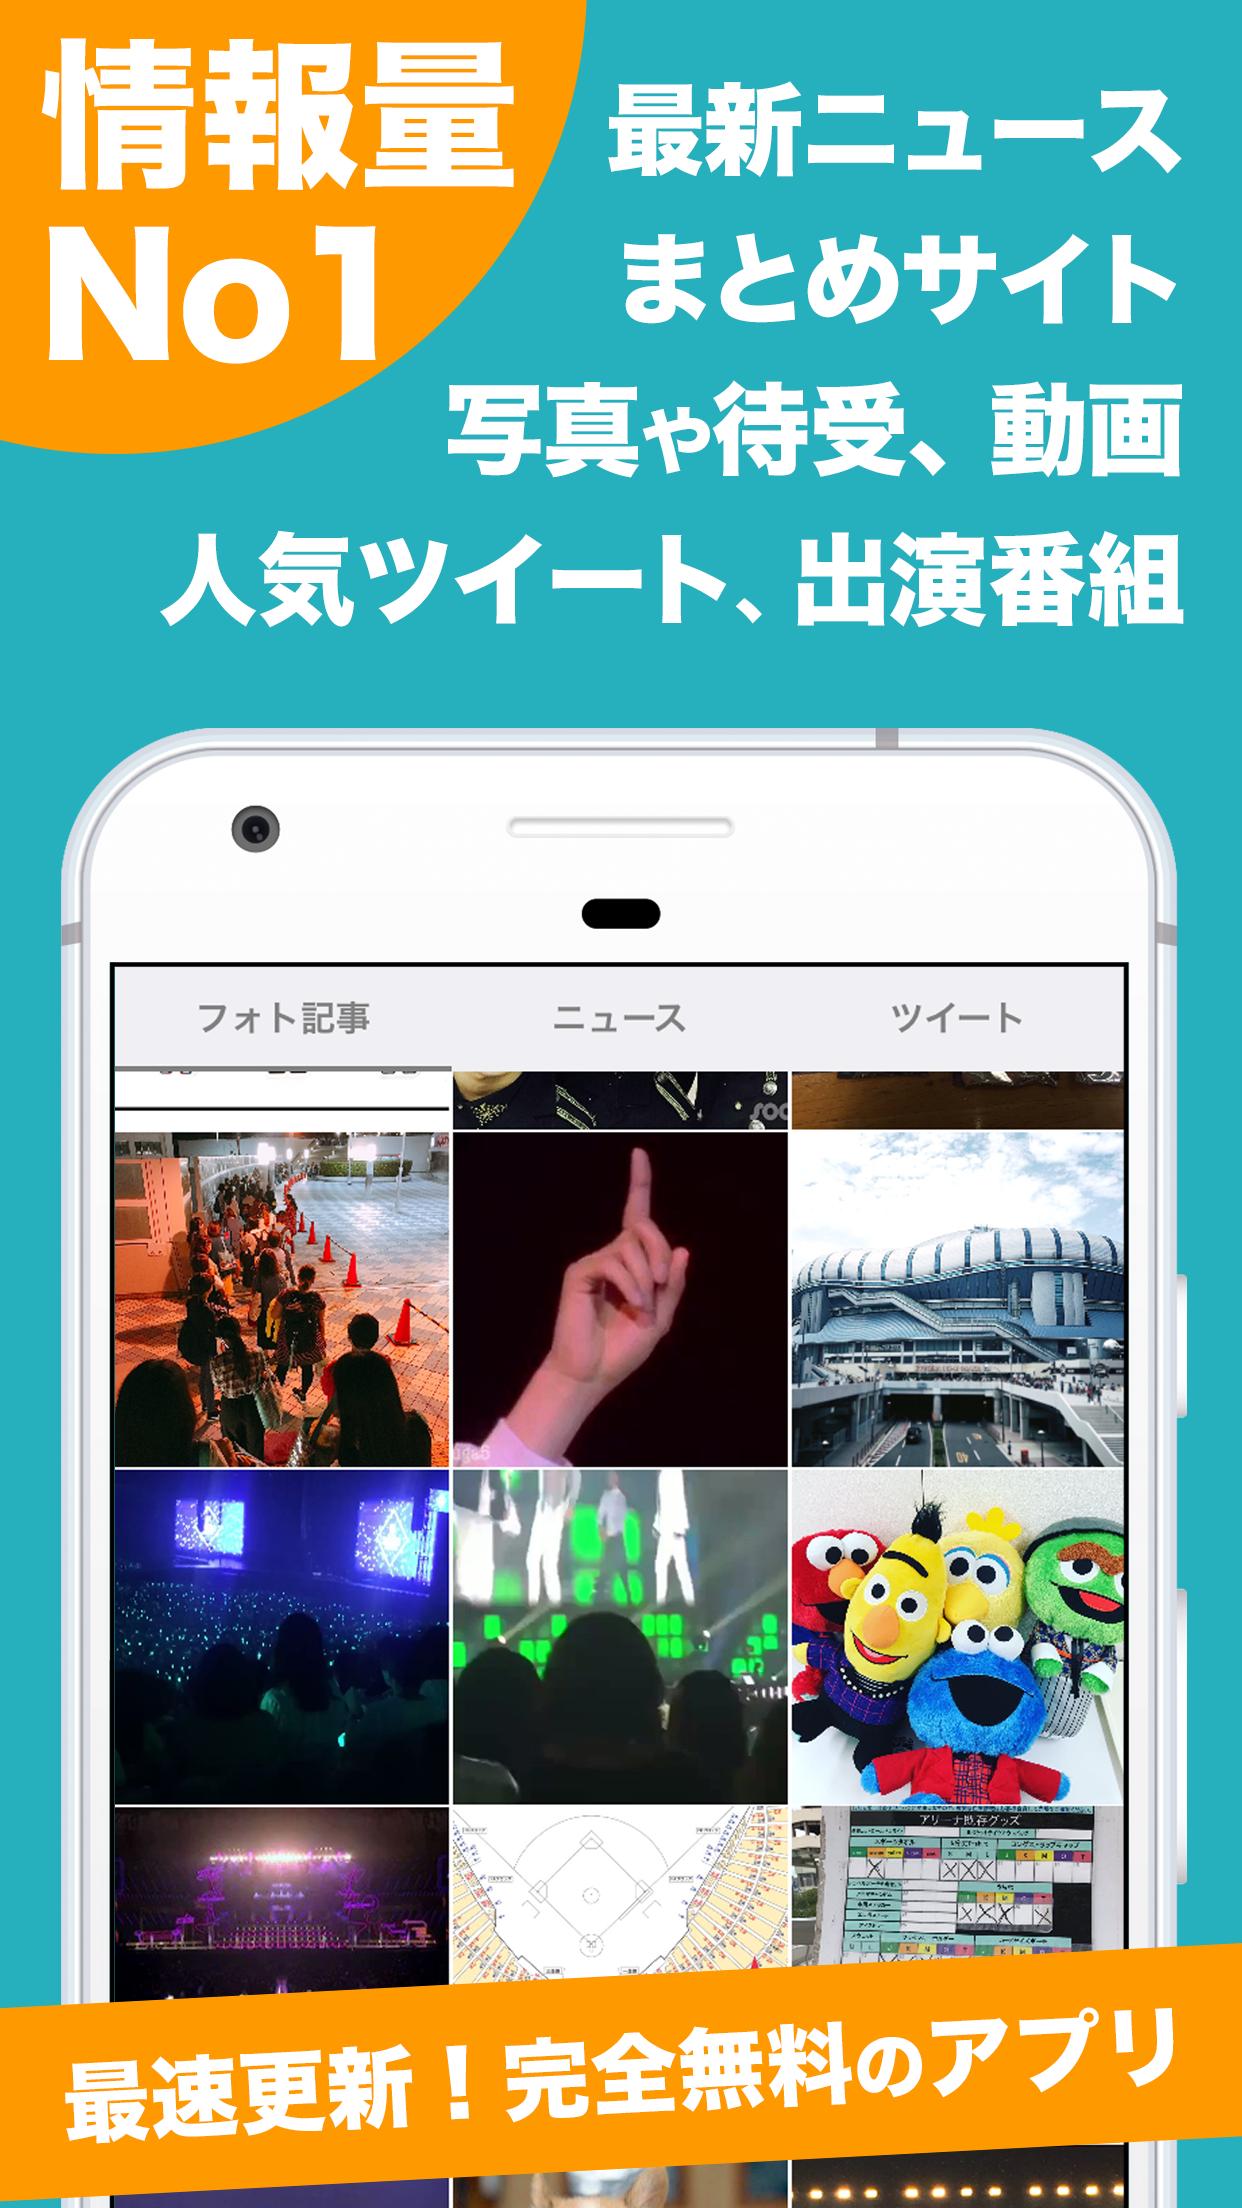 三代目jsbまとめタブ For 三代目j Soul Brothers For Android Apk Download